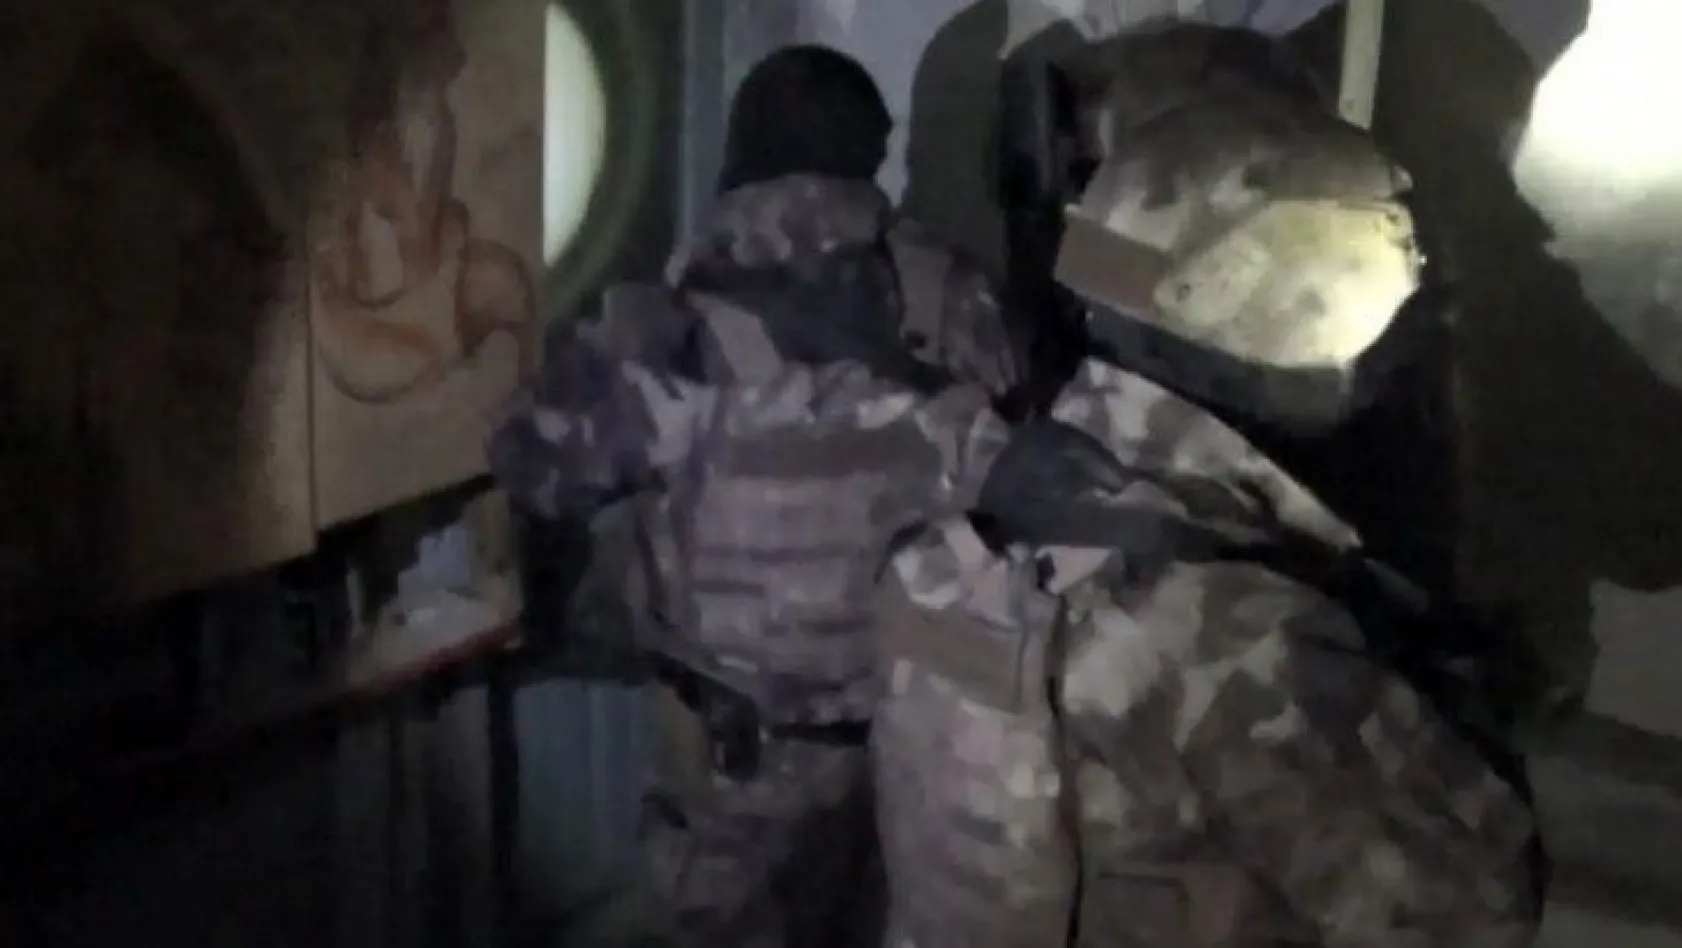 Elazığ'da özel harekat destekli uyuşturucu operasyonu! Gözaltılar var